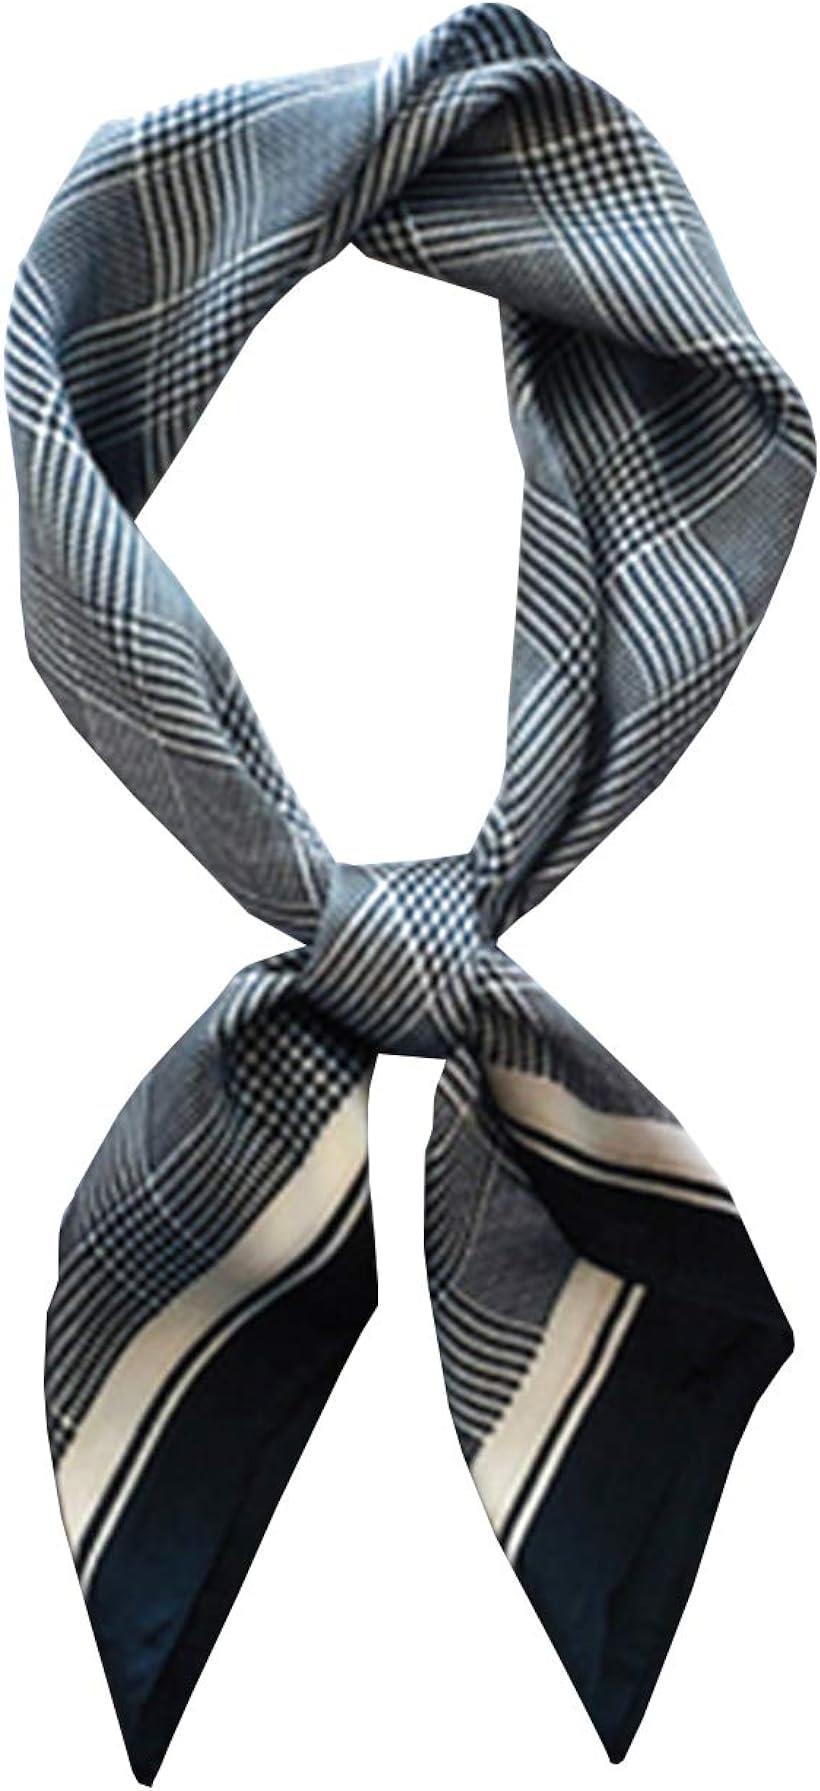 [ワン アンブ] スカーフ レディース 春 シルク調 正方形 薄手 UVカット お洒落 小物 70×70 cm チェックグレー